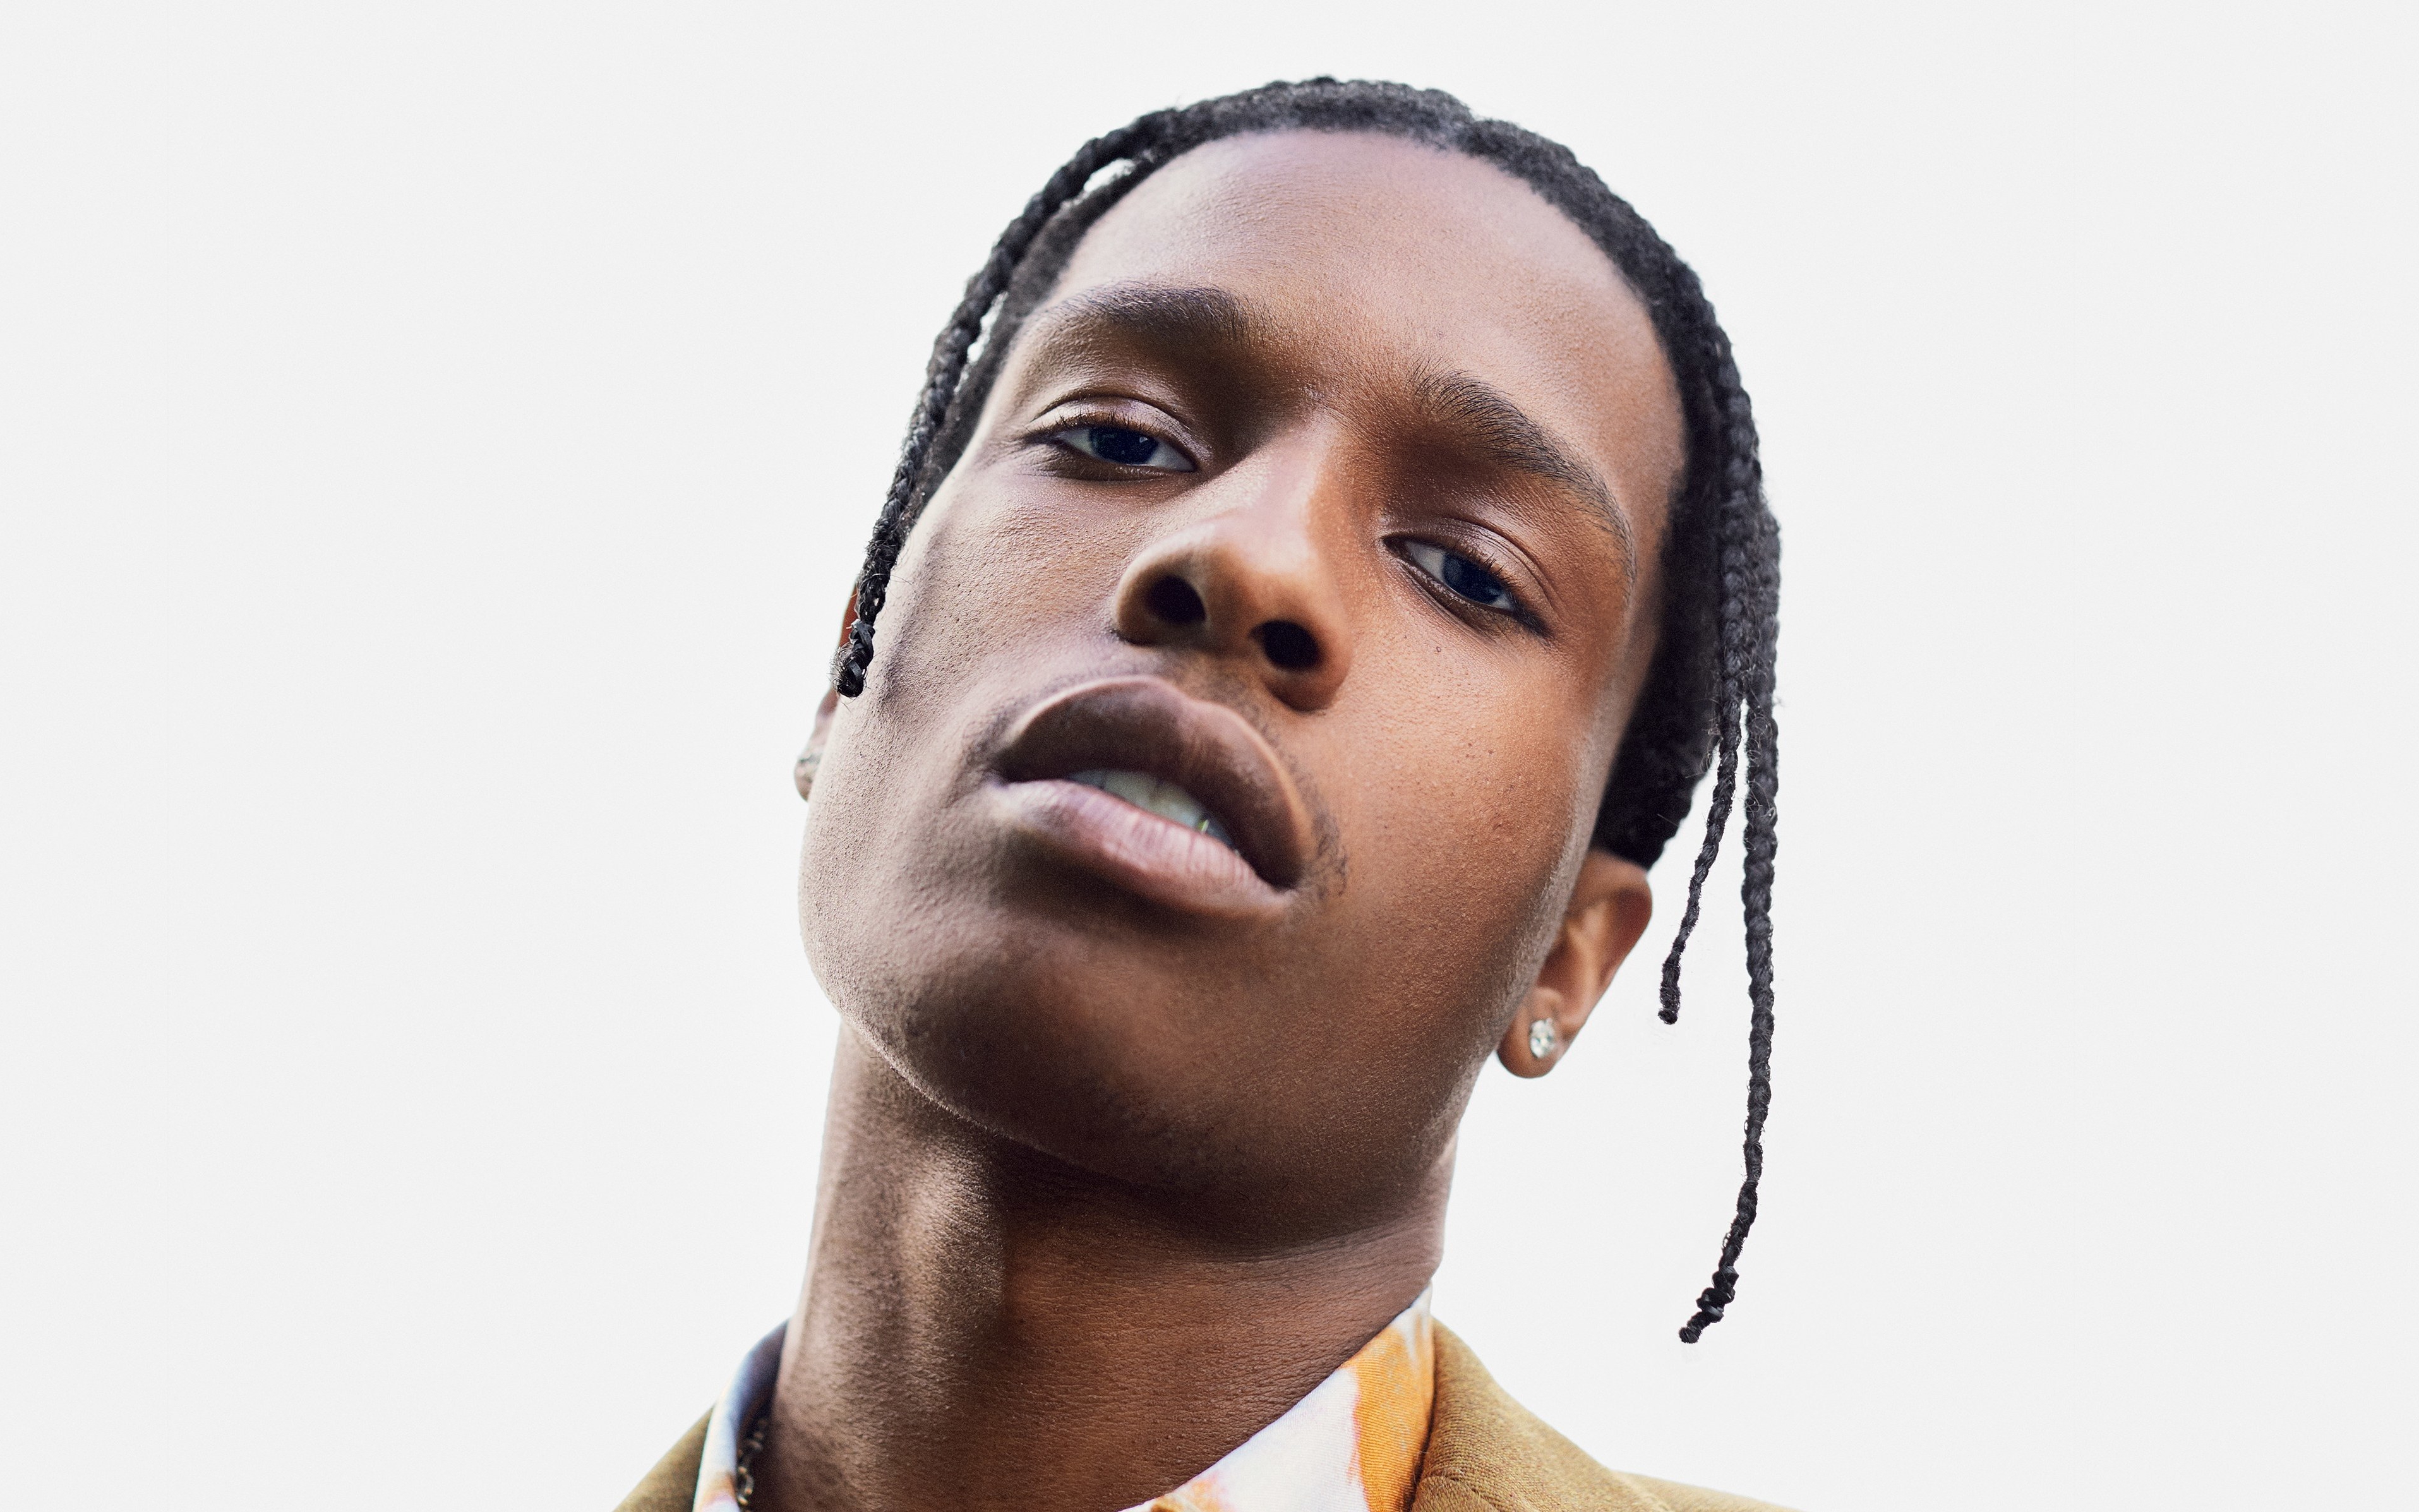 El futuro de A$AP Rocky, incierto tras su altercado en Suecia